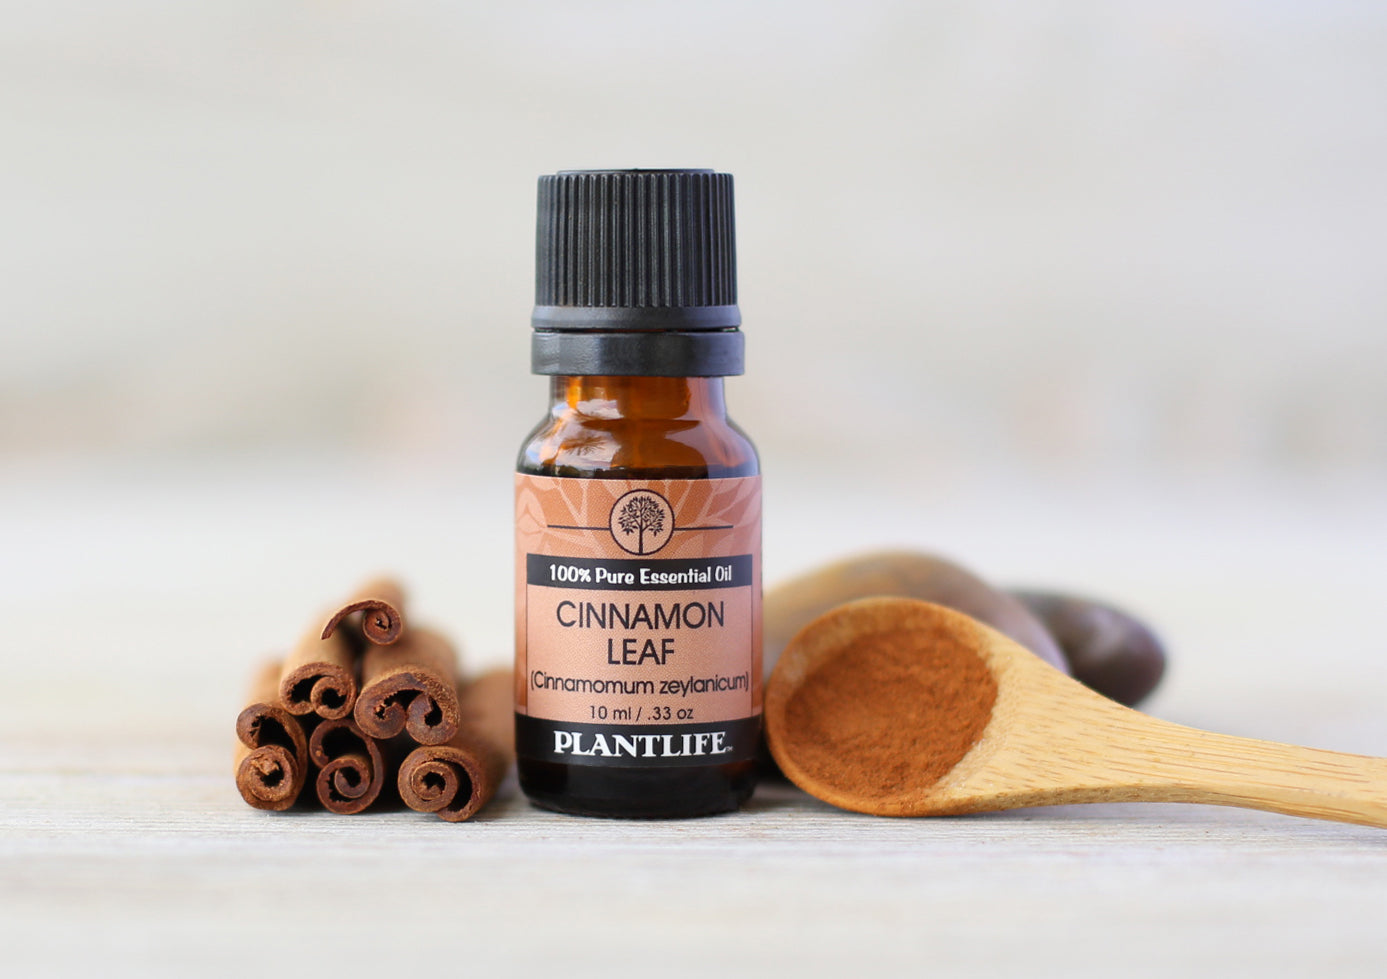 Plantlife Cinnamon Leaf 100% Pure Essential Oil - 10 ml